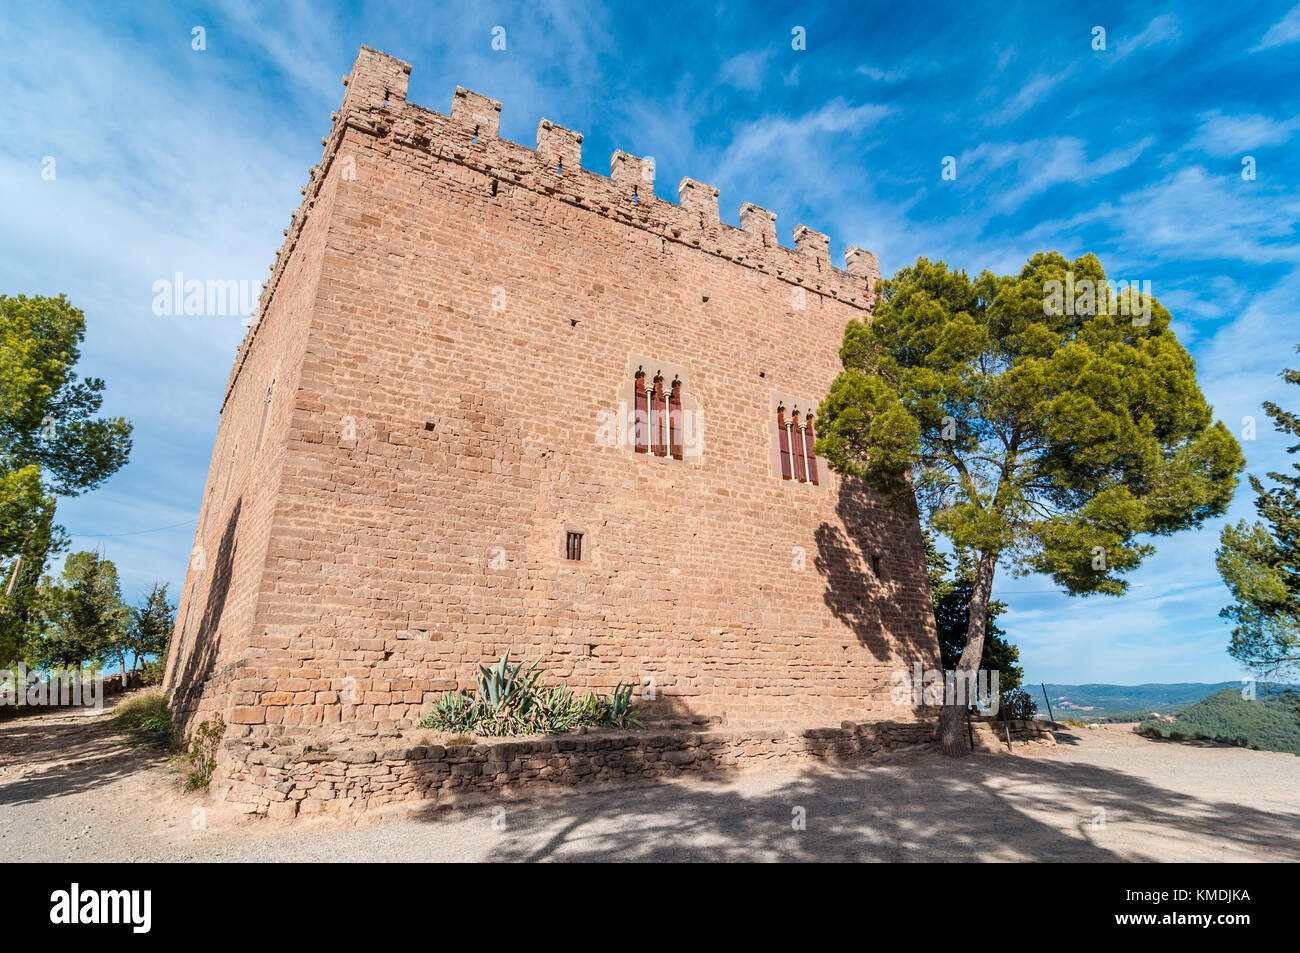 Balsareny castillo fortaleza de estilo gótico fechado en 931 y situado encima de una colina en la ciudad de Balsareny, Cataluña Foto de stock